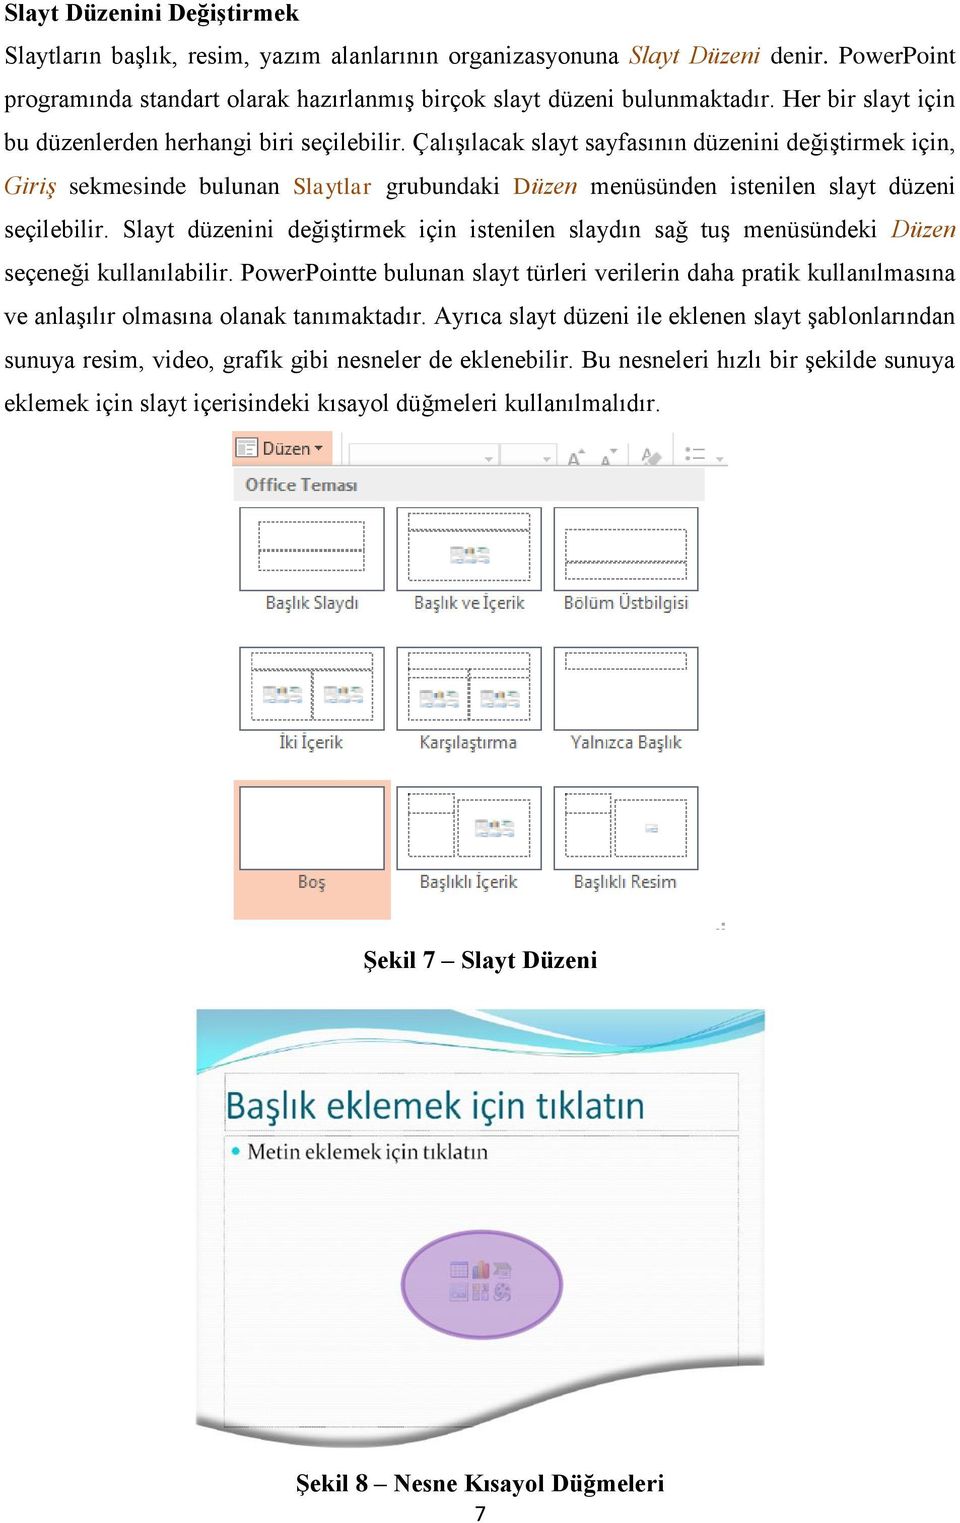 Çalışılacak slayt sayfasının düzenini değiştirmek için, Giriş sekmesinde bulunan Slaytlar grubundaki Düzen menüsünden istenilen slayt düzeni seçilebilir.